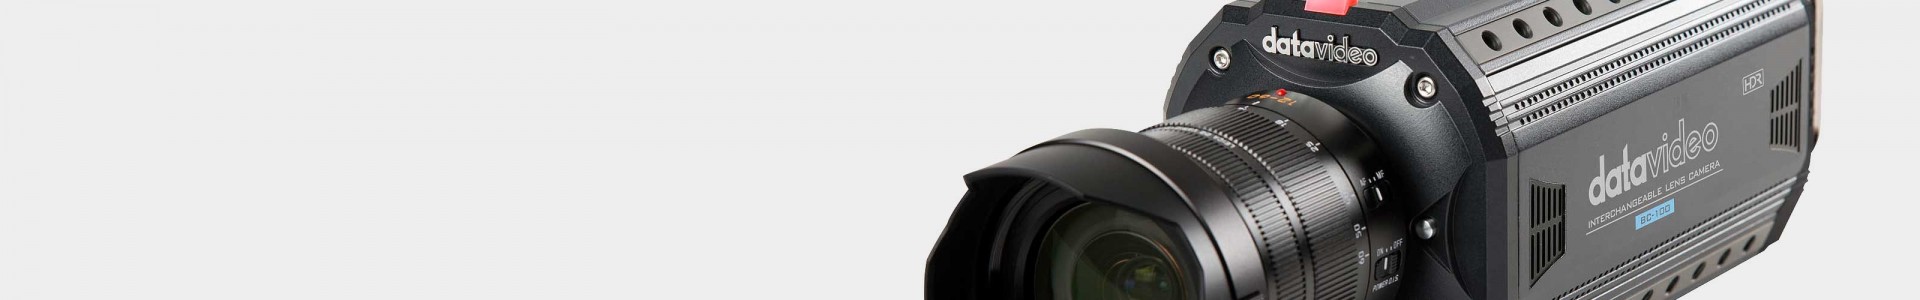 DATAVIDEO Video Cameras - PTZ and POV cameras - Avacab